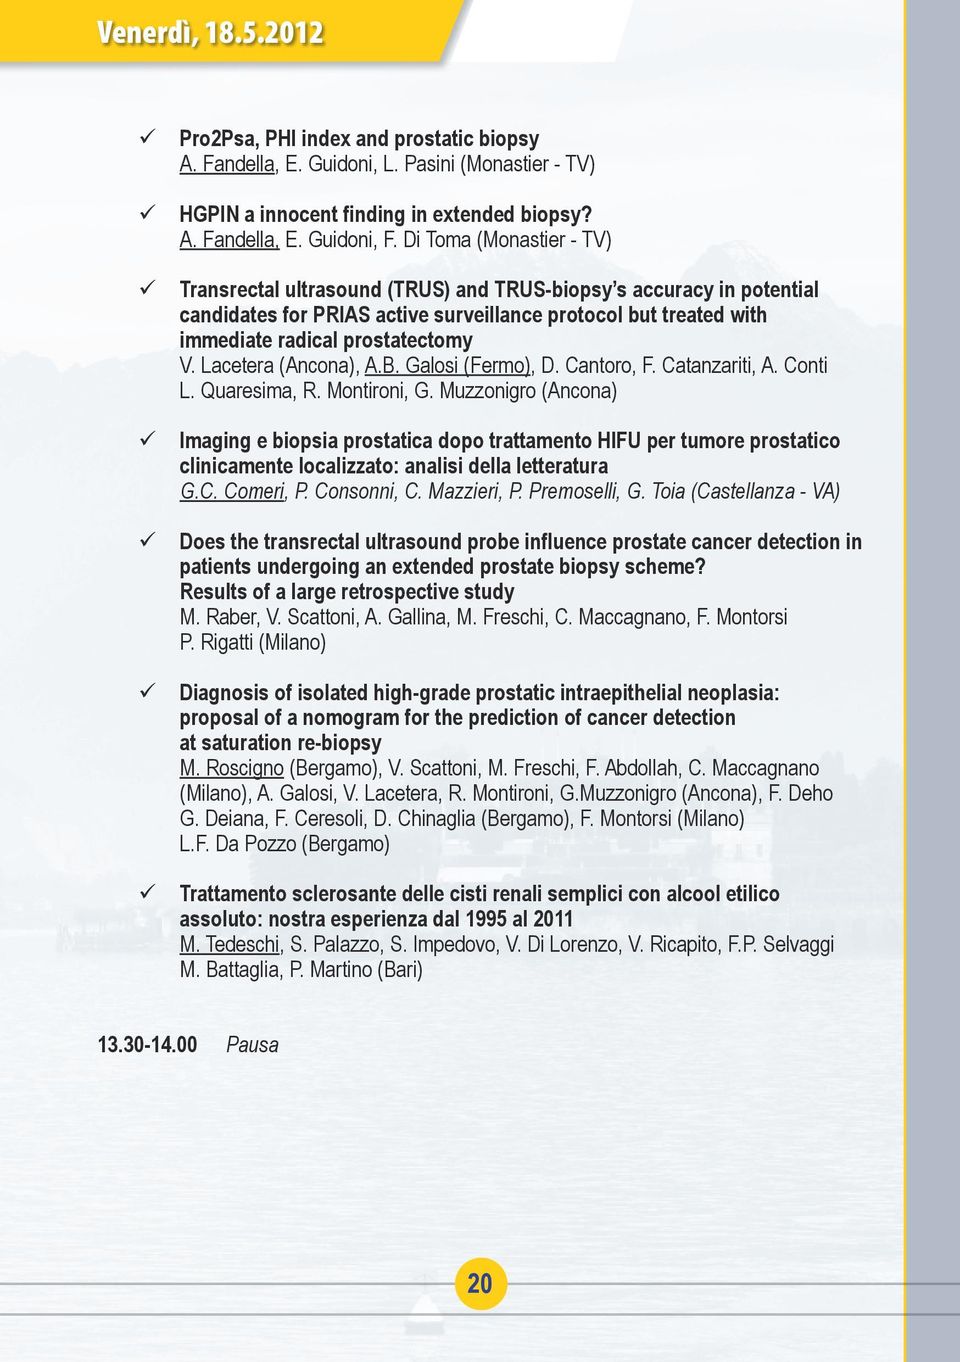 Lacetera (Ancona), A.B. Galosi (Fermo), D. Cantoro, F. Catanzariti, A. Conti L. Quaresima, R. Montironi, G.